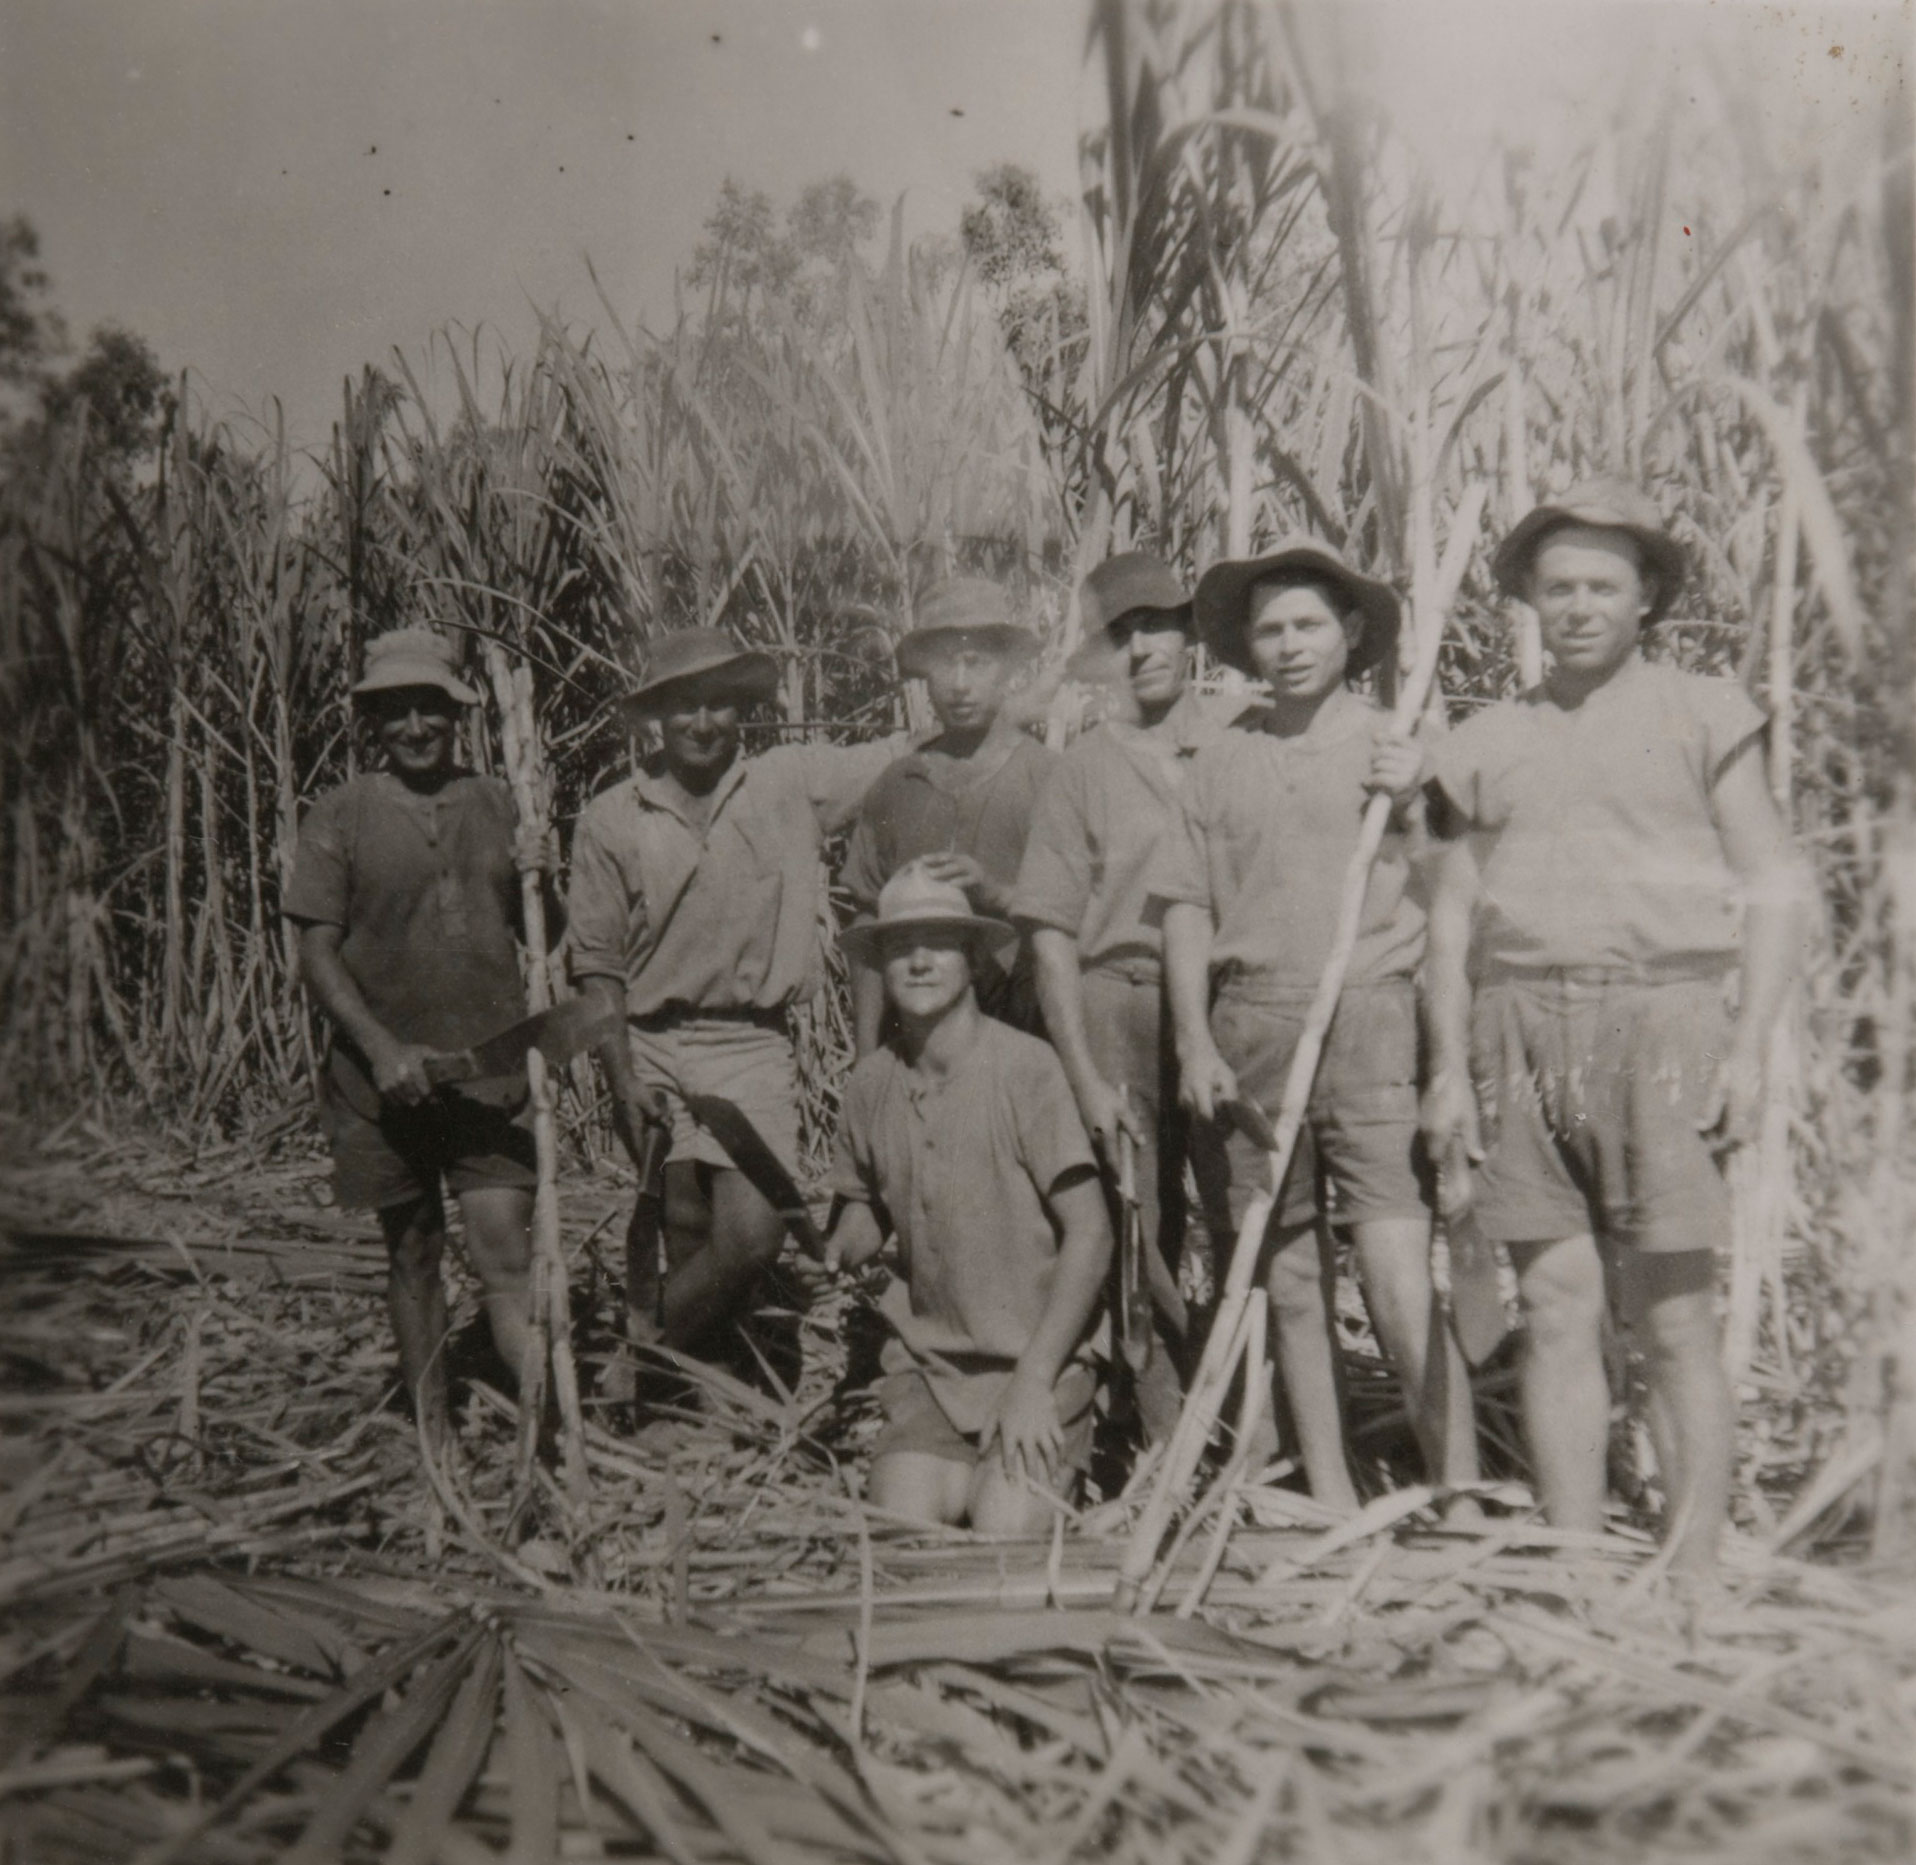 Seven cane cutters in a field.